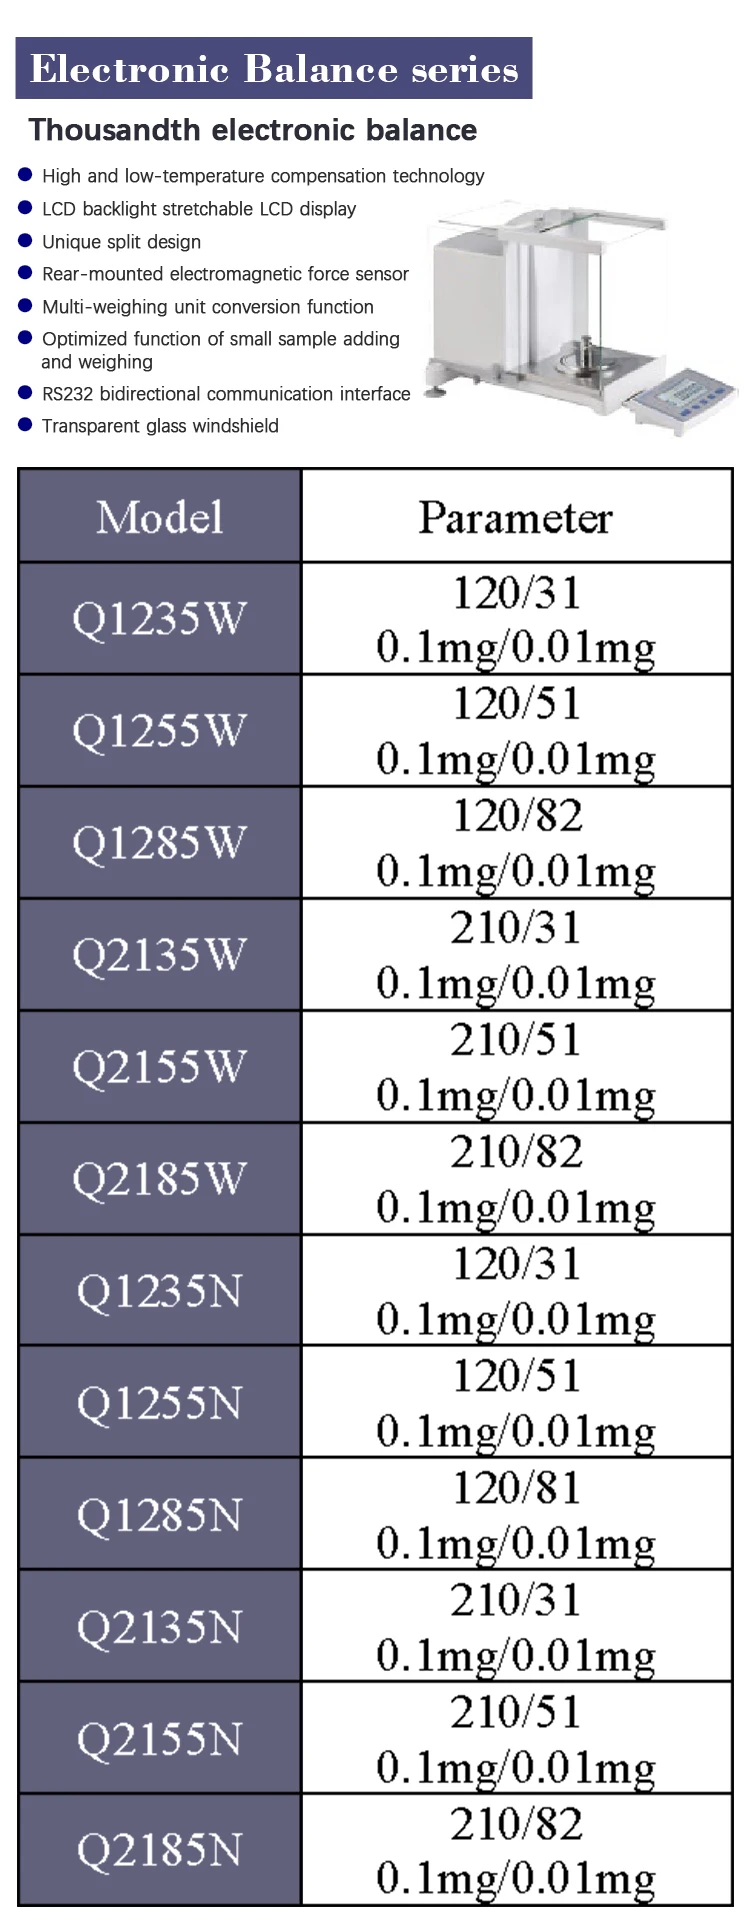 Vesta Q224W ЖК-дисплей с подсветкой Электронные весы десятой серии электронных весов